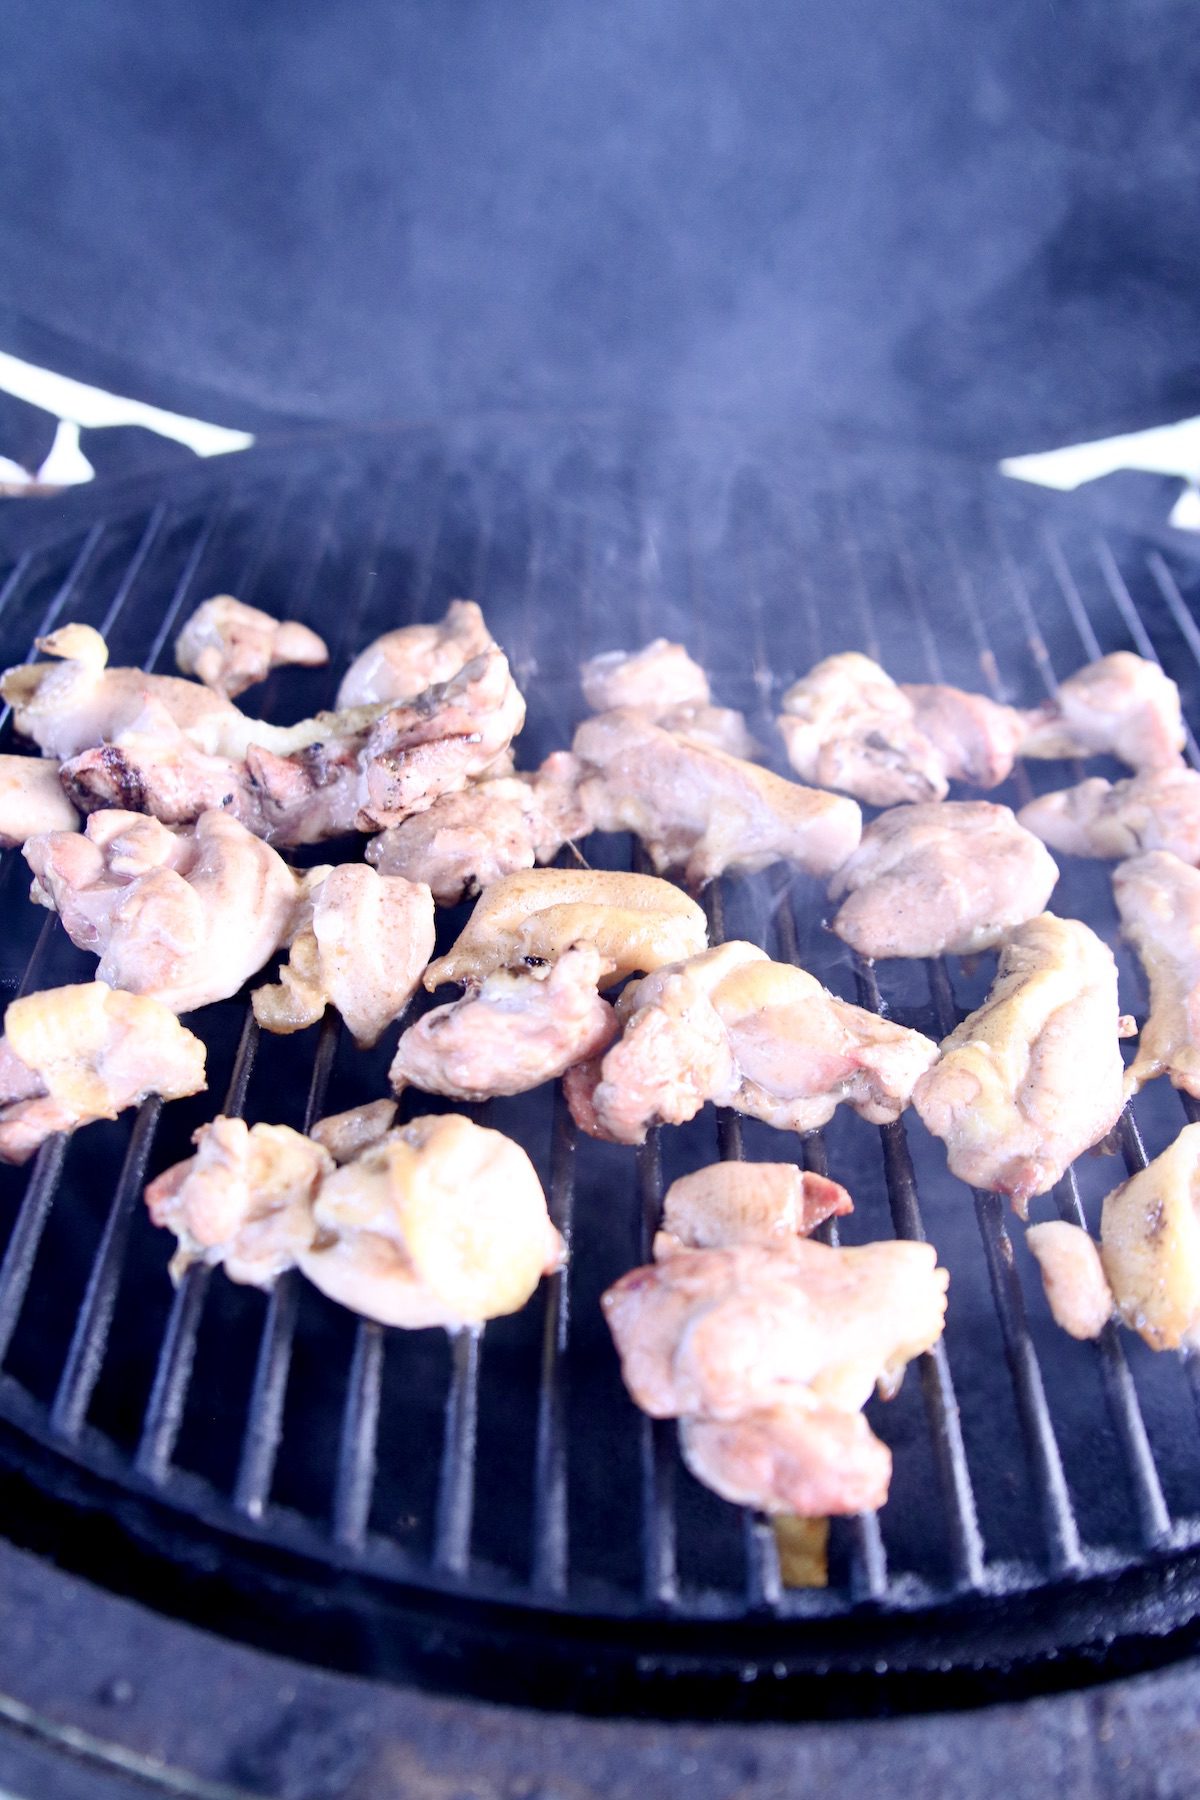 boneless wings on a grill